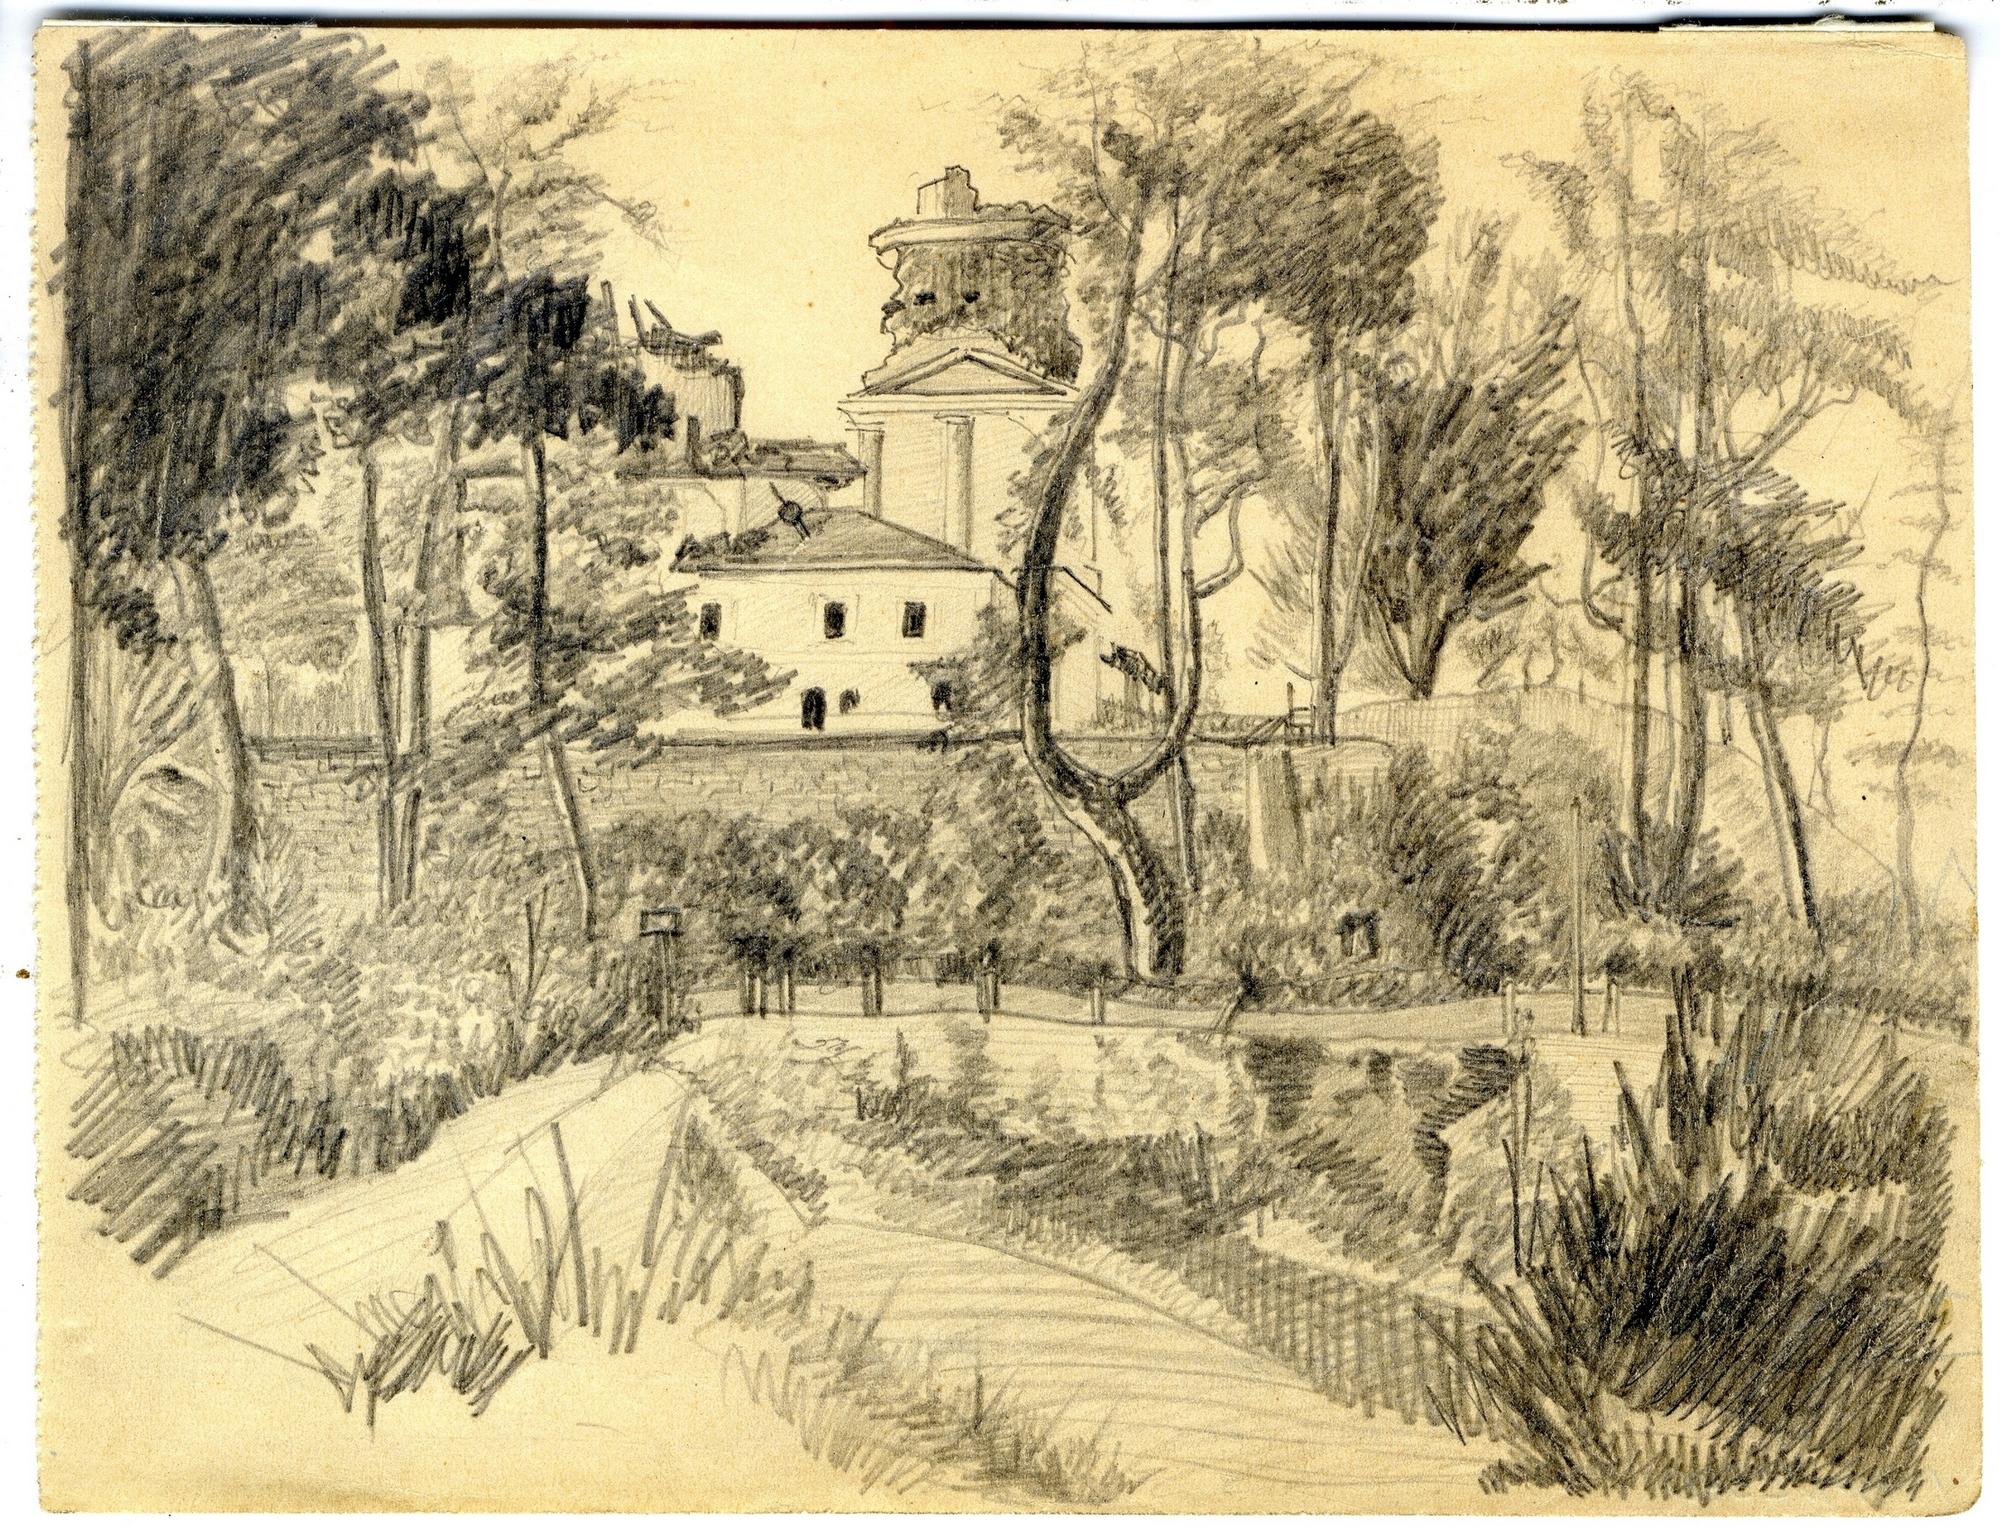 Литография рисунка Иванова Снетогорский монастырь 1837